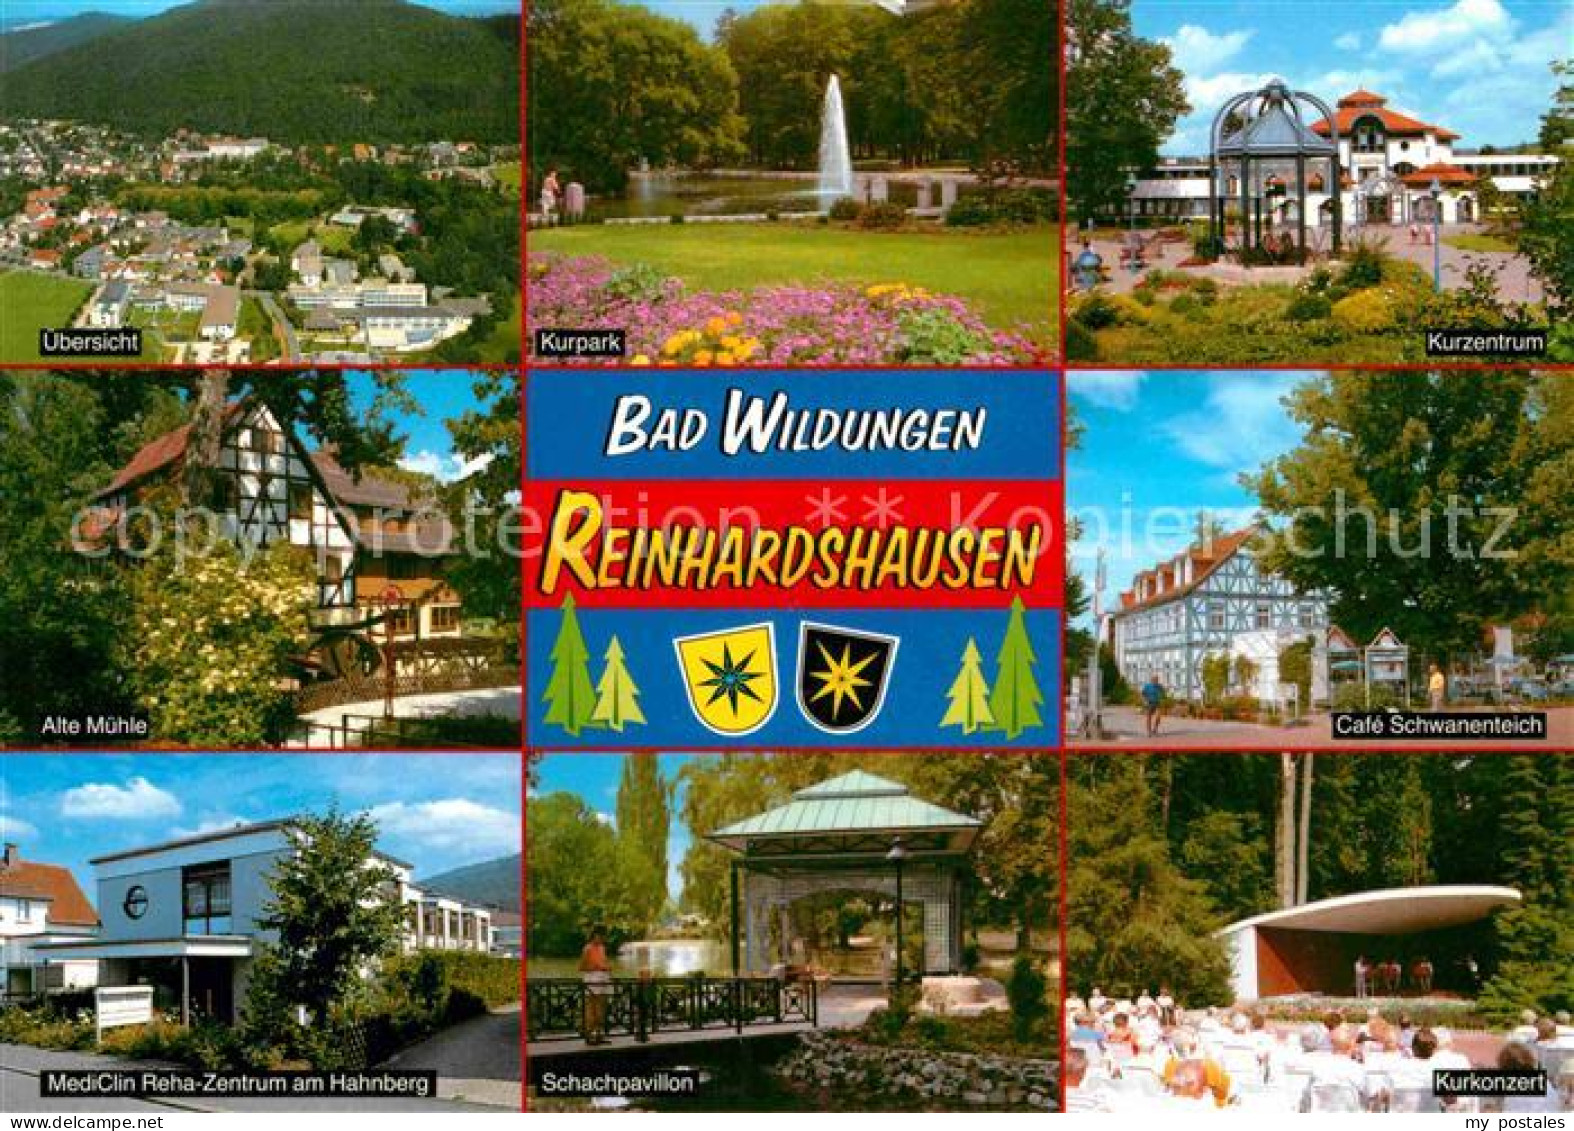 72869481 Bad Wildungen Cafe Schwanenteich Schachpavillon MediClin Reha-Zentrum H - Bad Wildungen